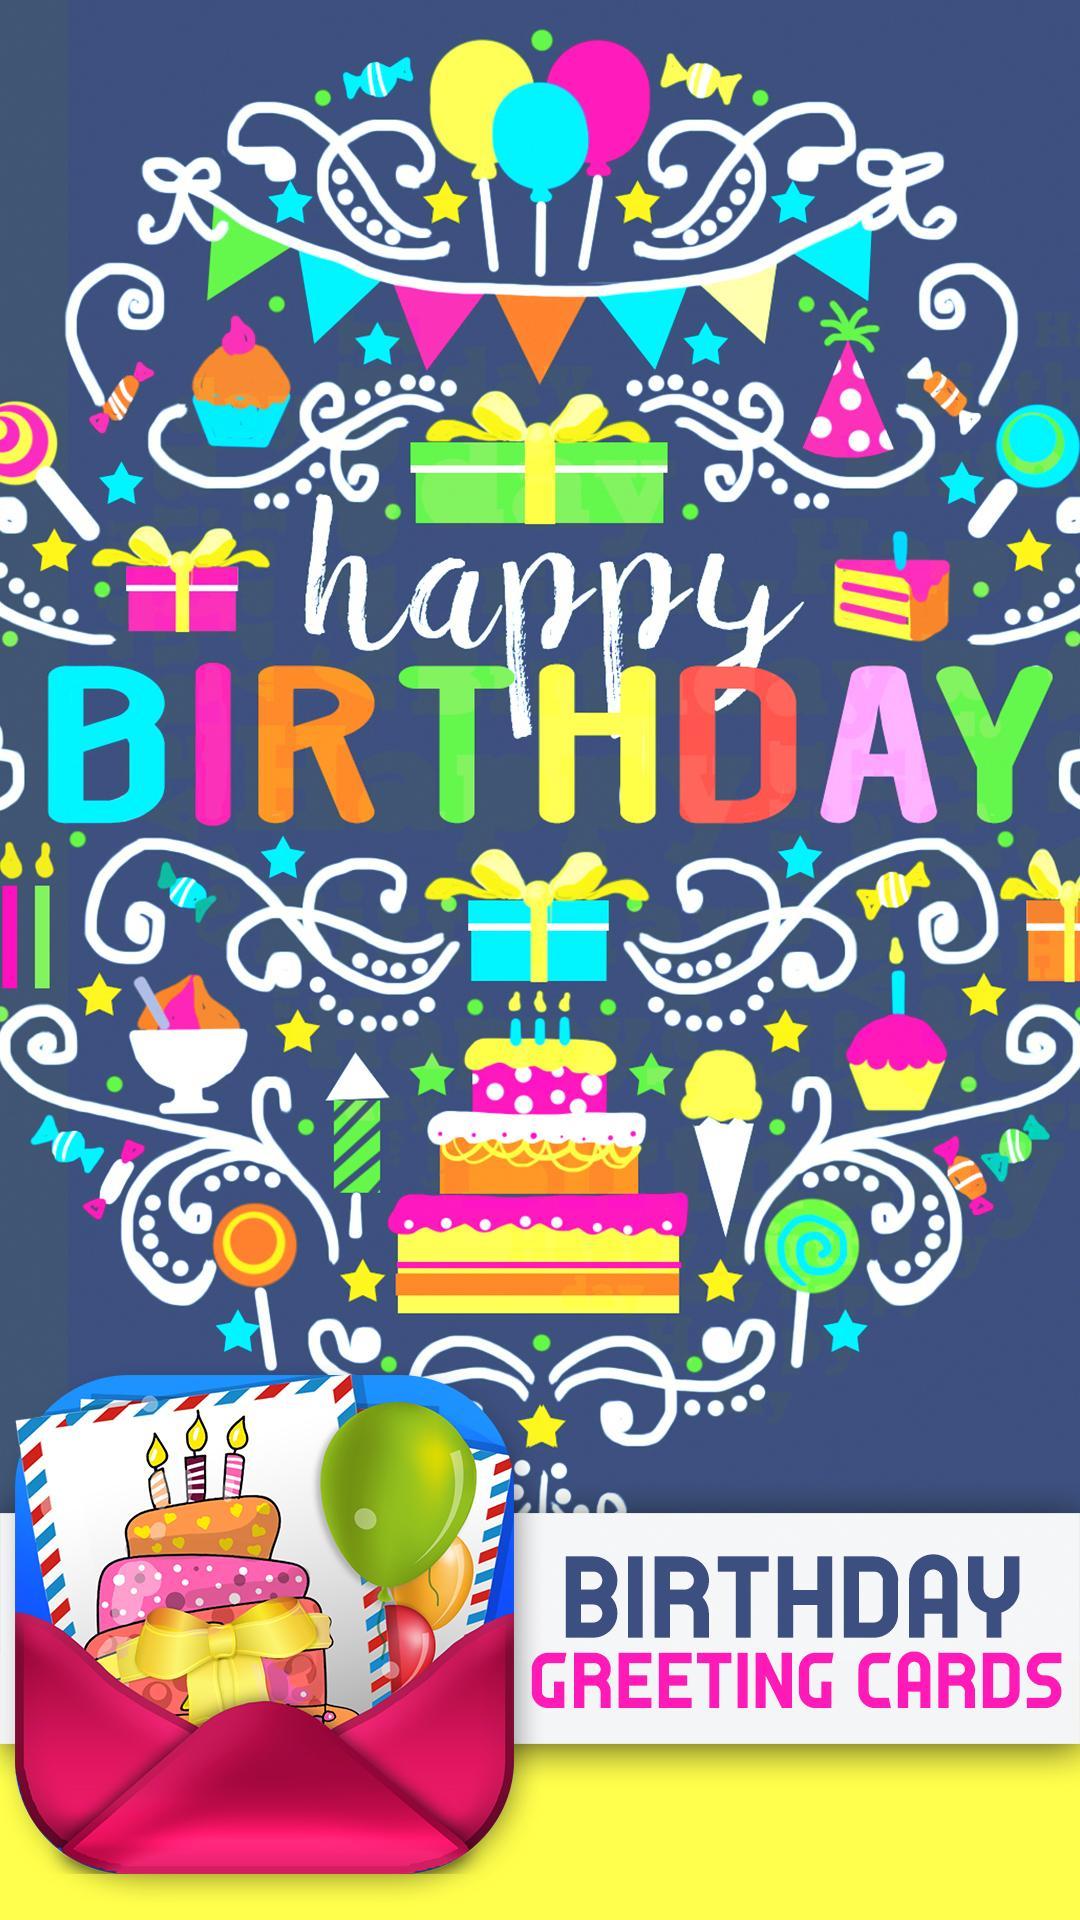 Android 用の お誕生日おめでとうございますグリーティングカード Apk をダウンロード